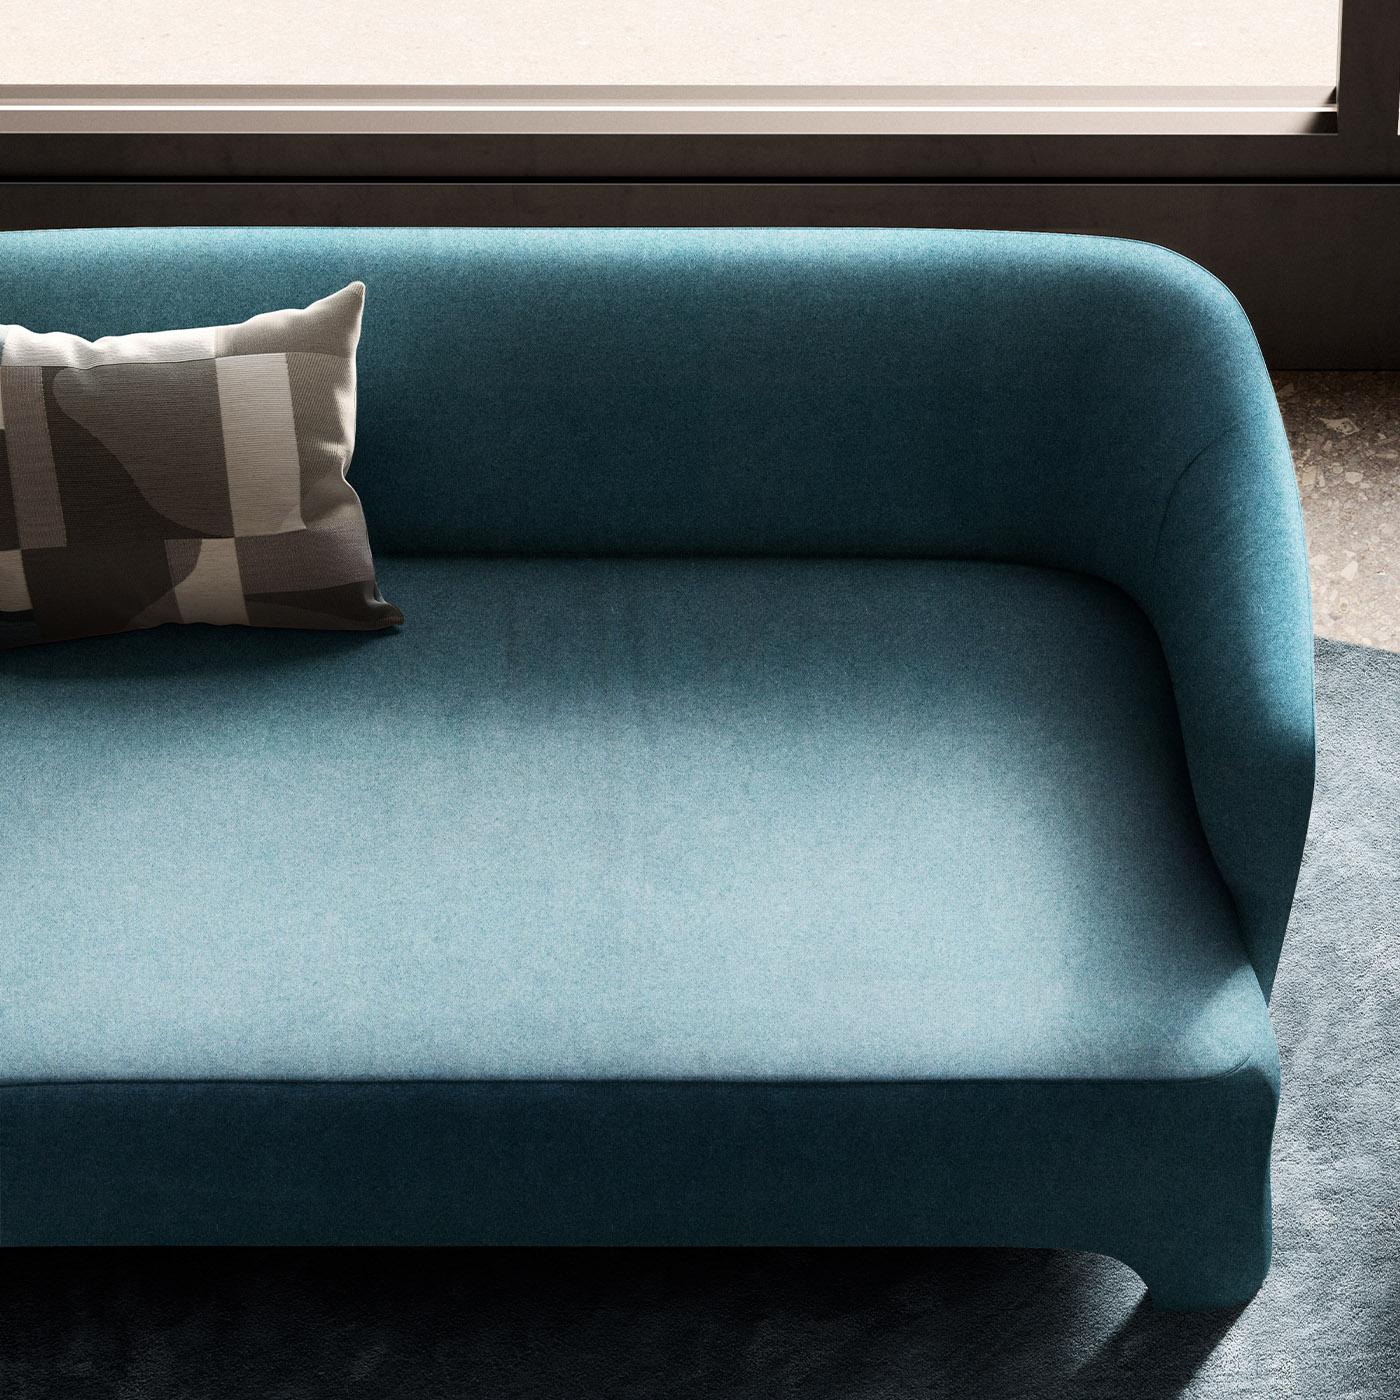 Caractérisé par une fascinante teinte bleue de style contemporain, ce canapé est un design iconique de Corrado Corradi Dell'Acqua et un complément idéal à un intérieur raffiné. Réalisée en bois et en mousse ignifugée, la structure est entièrement